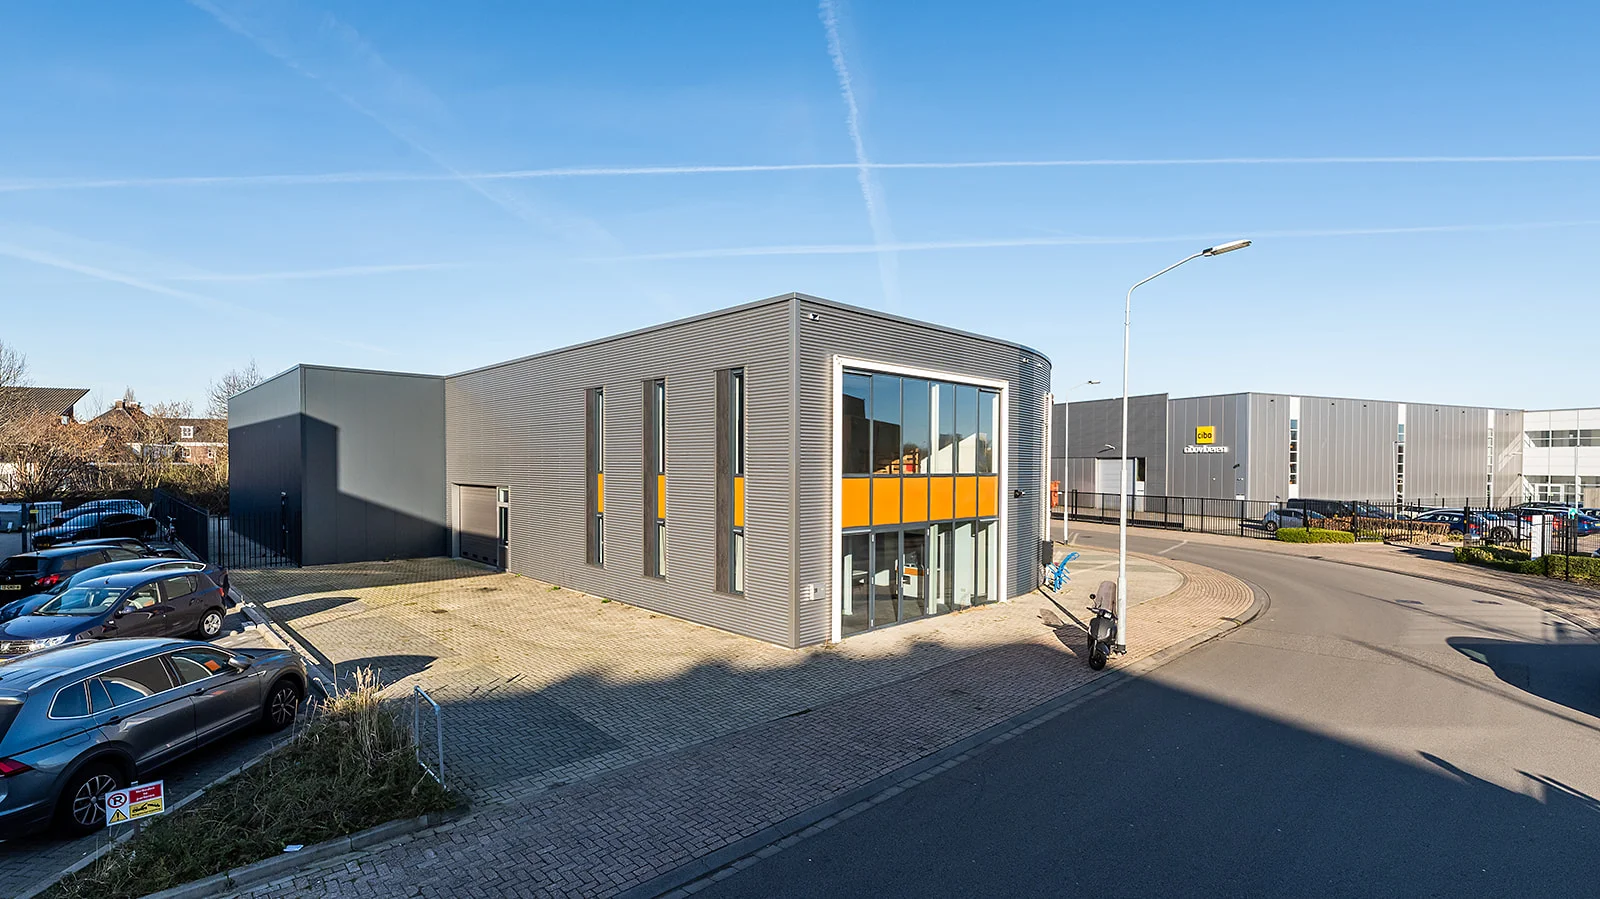 In opdracht van de Harthoorn Property Group B.V. werd circa 400 m2 bedrijfsruimte verhuurd aan de Van de Reijtstraat 28 in Breda